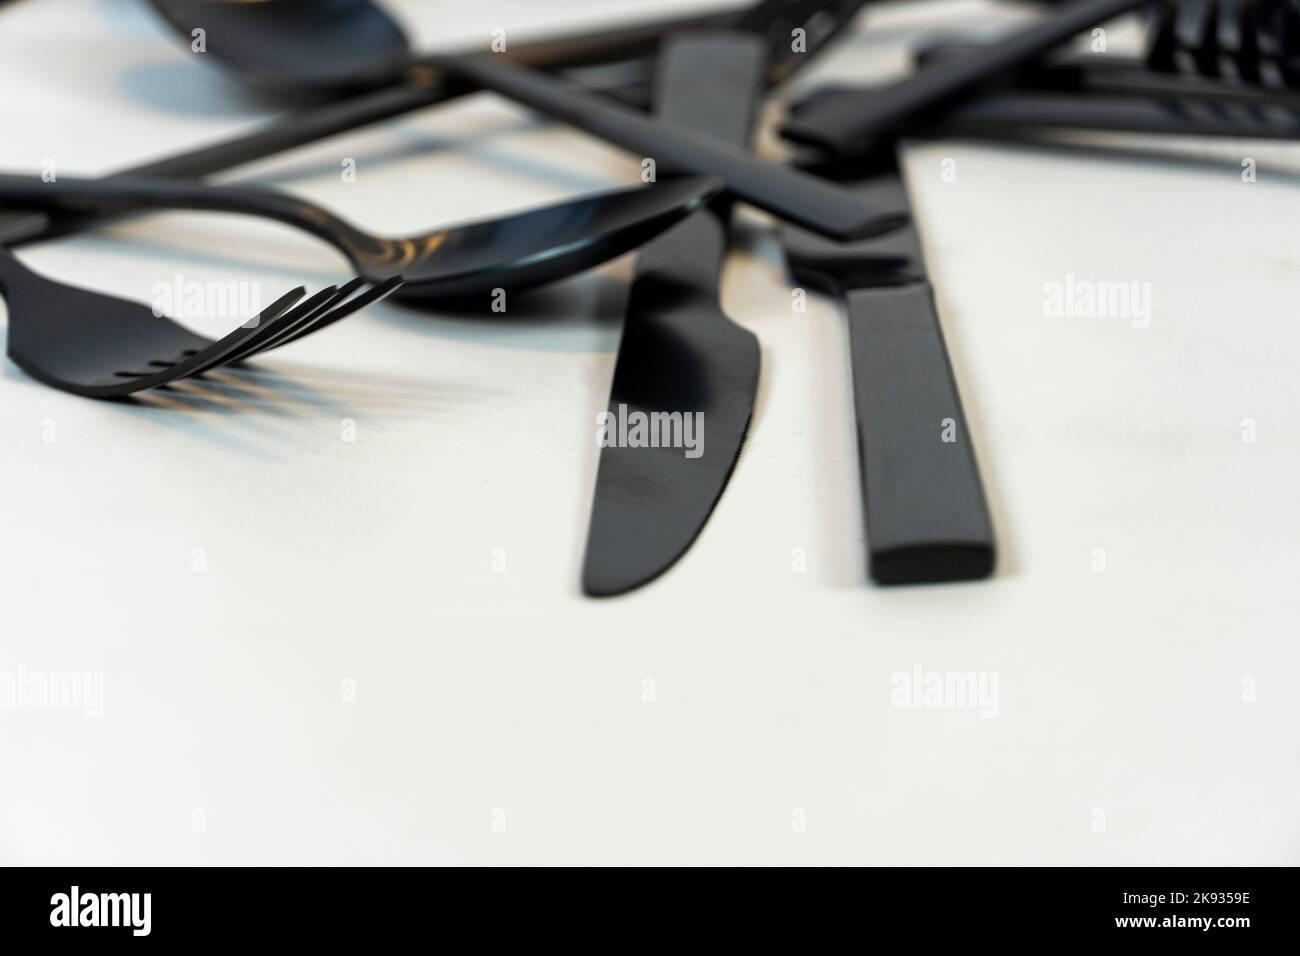 Vaisselle en métal noir ustensiles de coutellerie, fourchettes couteaux, cuillères sur fond gris mexcio Banque D'Images